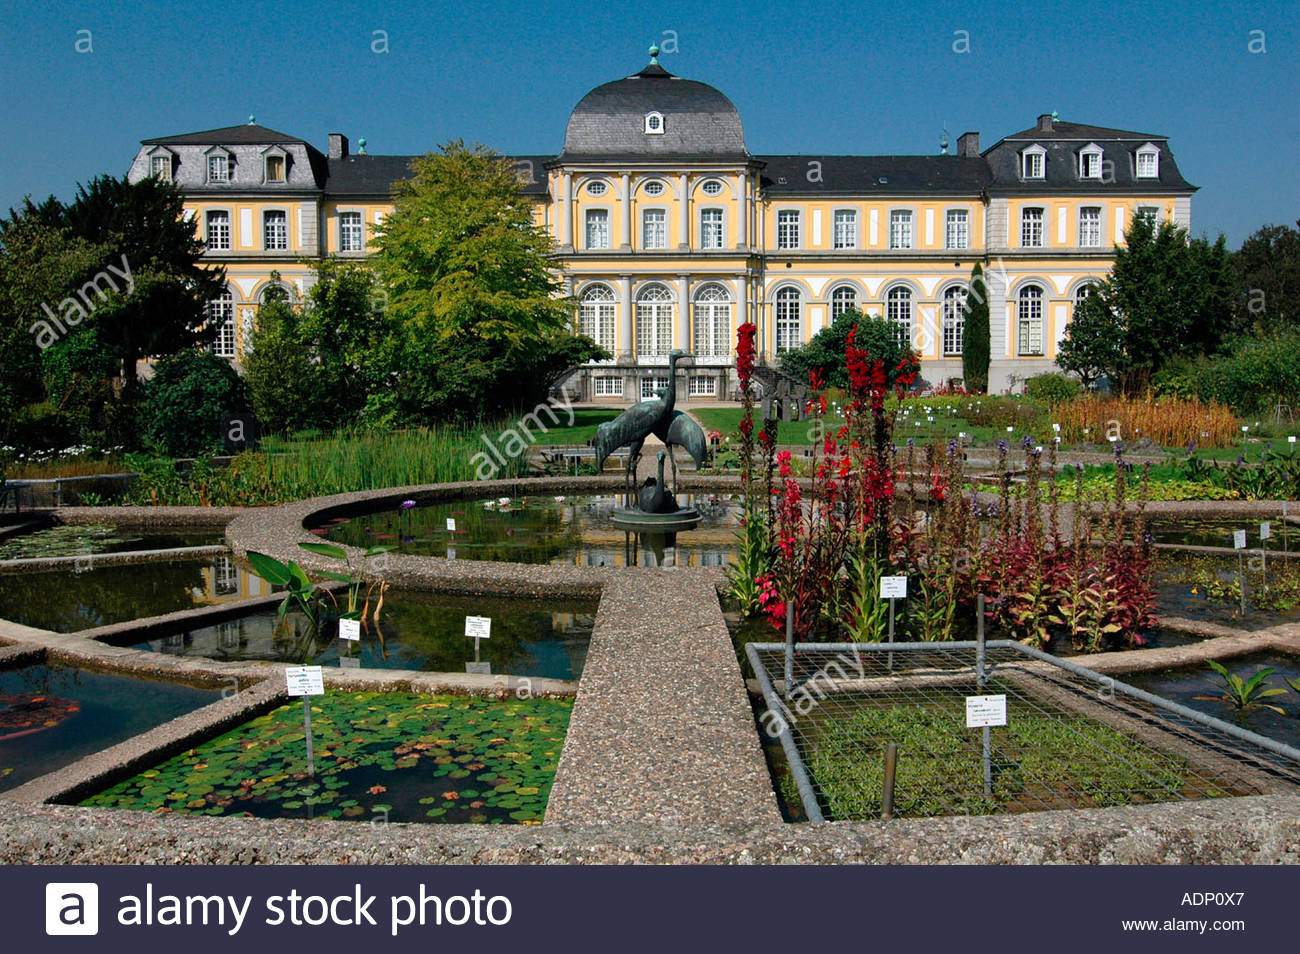 Botanischer Garten Bonn Luxus Schloss Clemensruh Poppelsdorfer Schloss Und Kran Brunnen